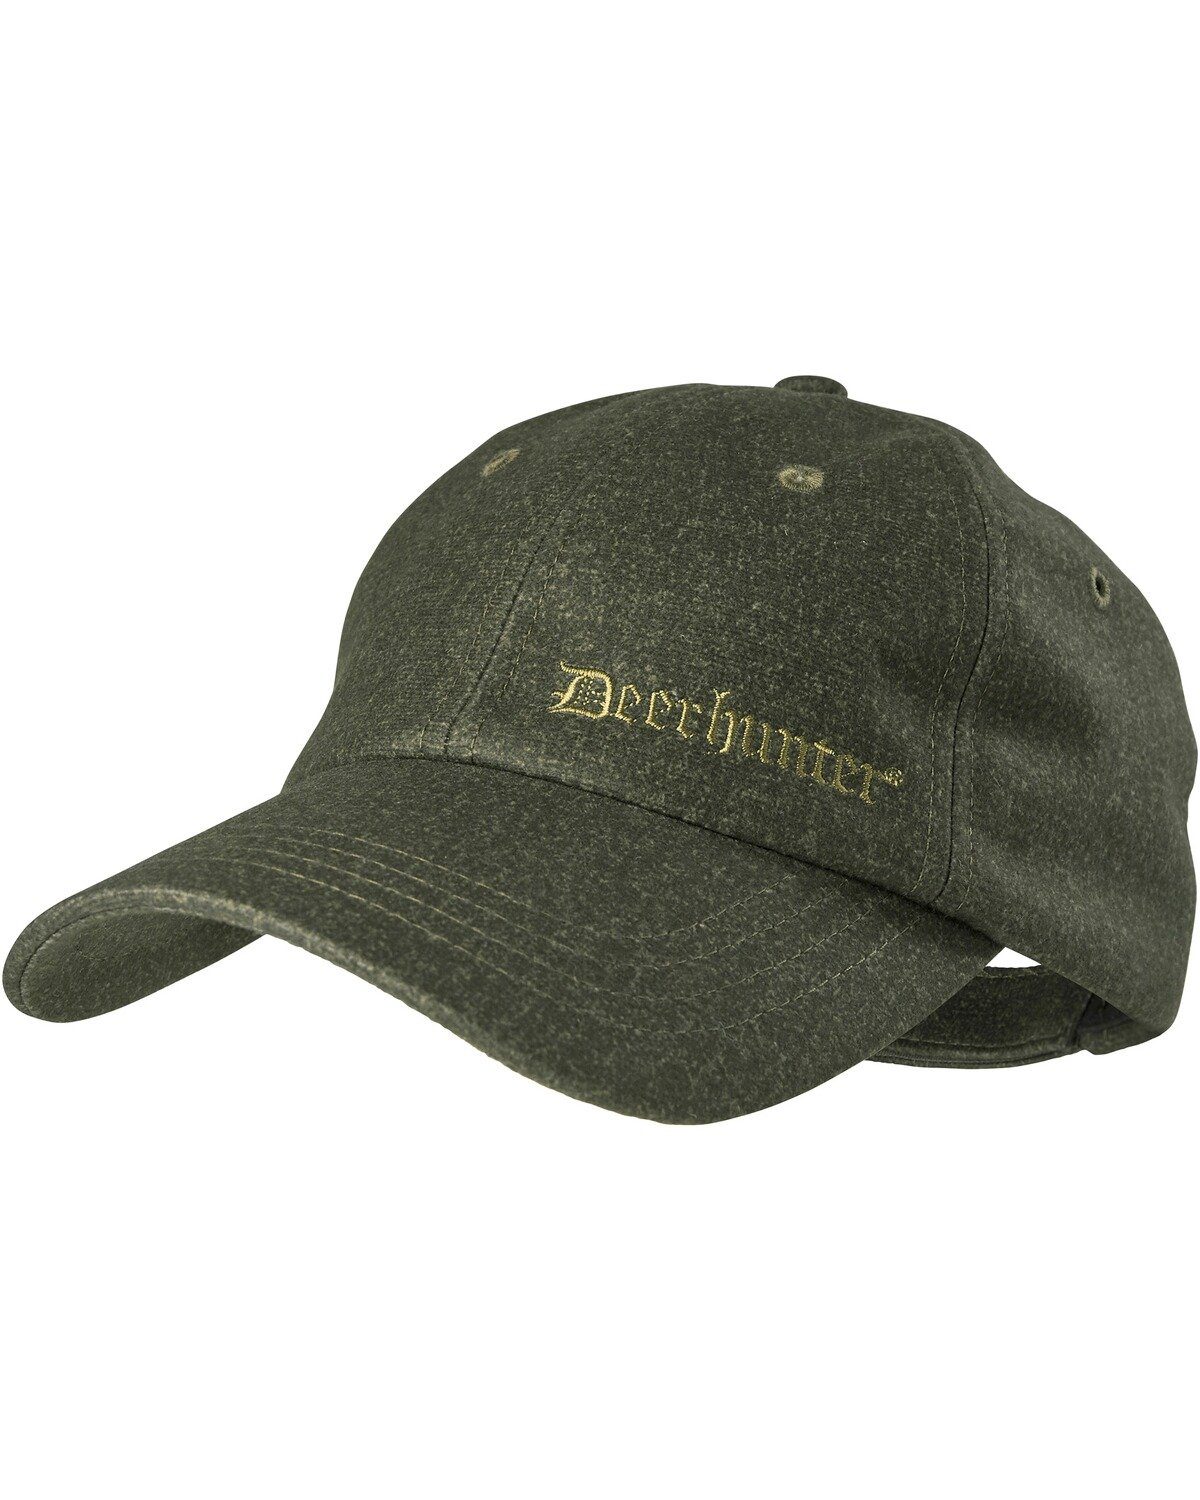 Deerhunter Baseball Cap Cap RAM